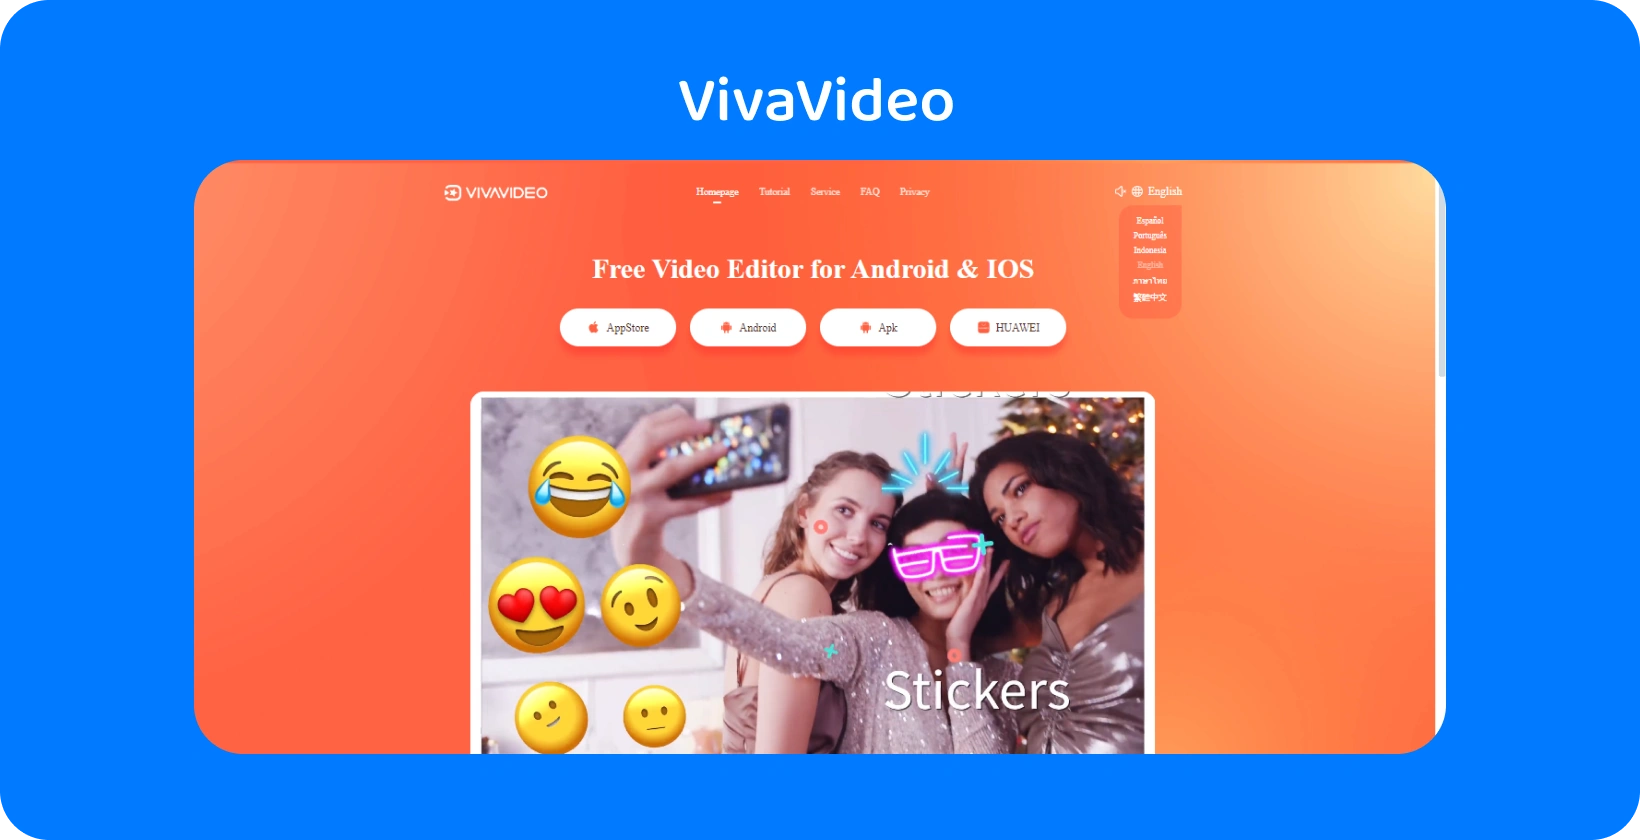 VivaVideo página do aplicativo com um fundo laranja vibrante, apresentando recursos de adesivos para melhorar vídeos em Android e iOS.
